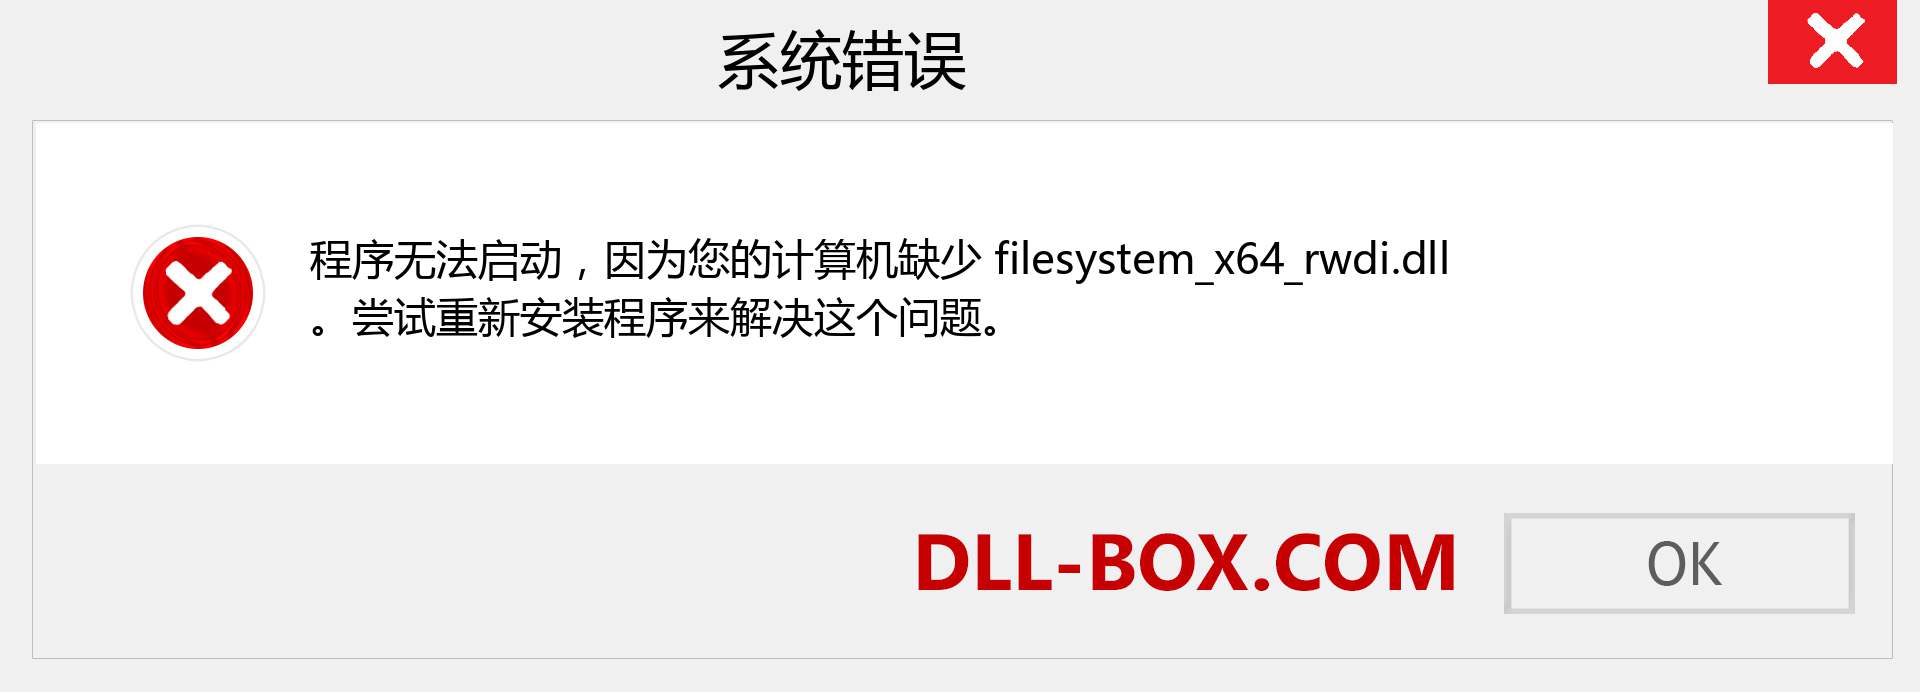 filesystem_x64_rwdi.dll 文件丢失？。 适用于 Windows 7、8、10 的下载 - 修复 Windows、照片、图像上的 filesystem_x64_rwdi dll 丢失错误